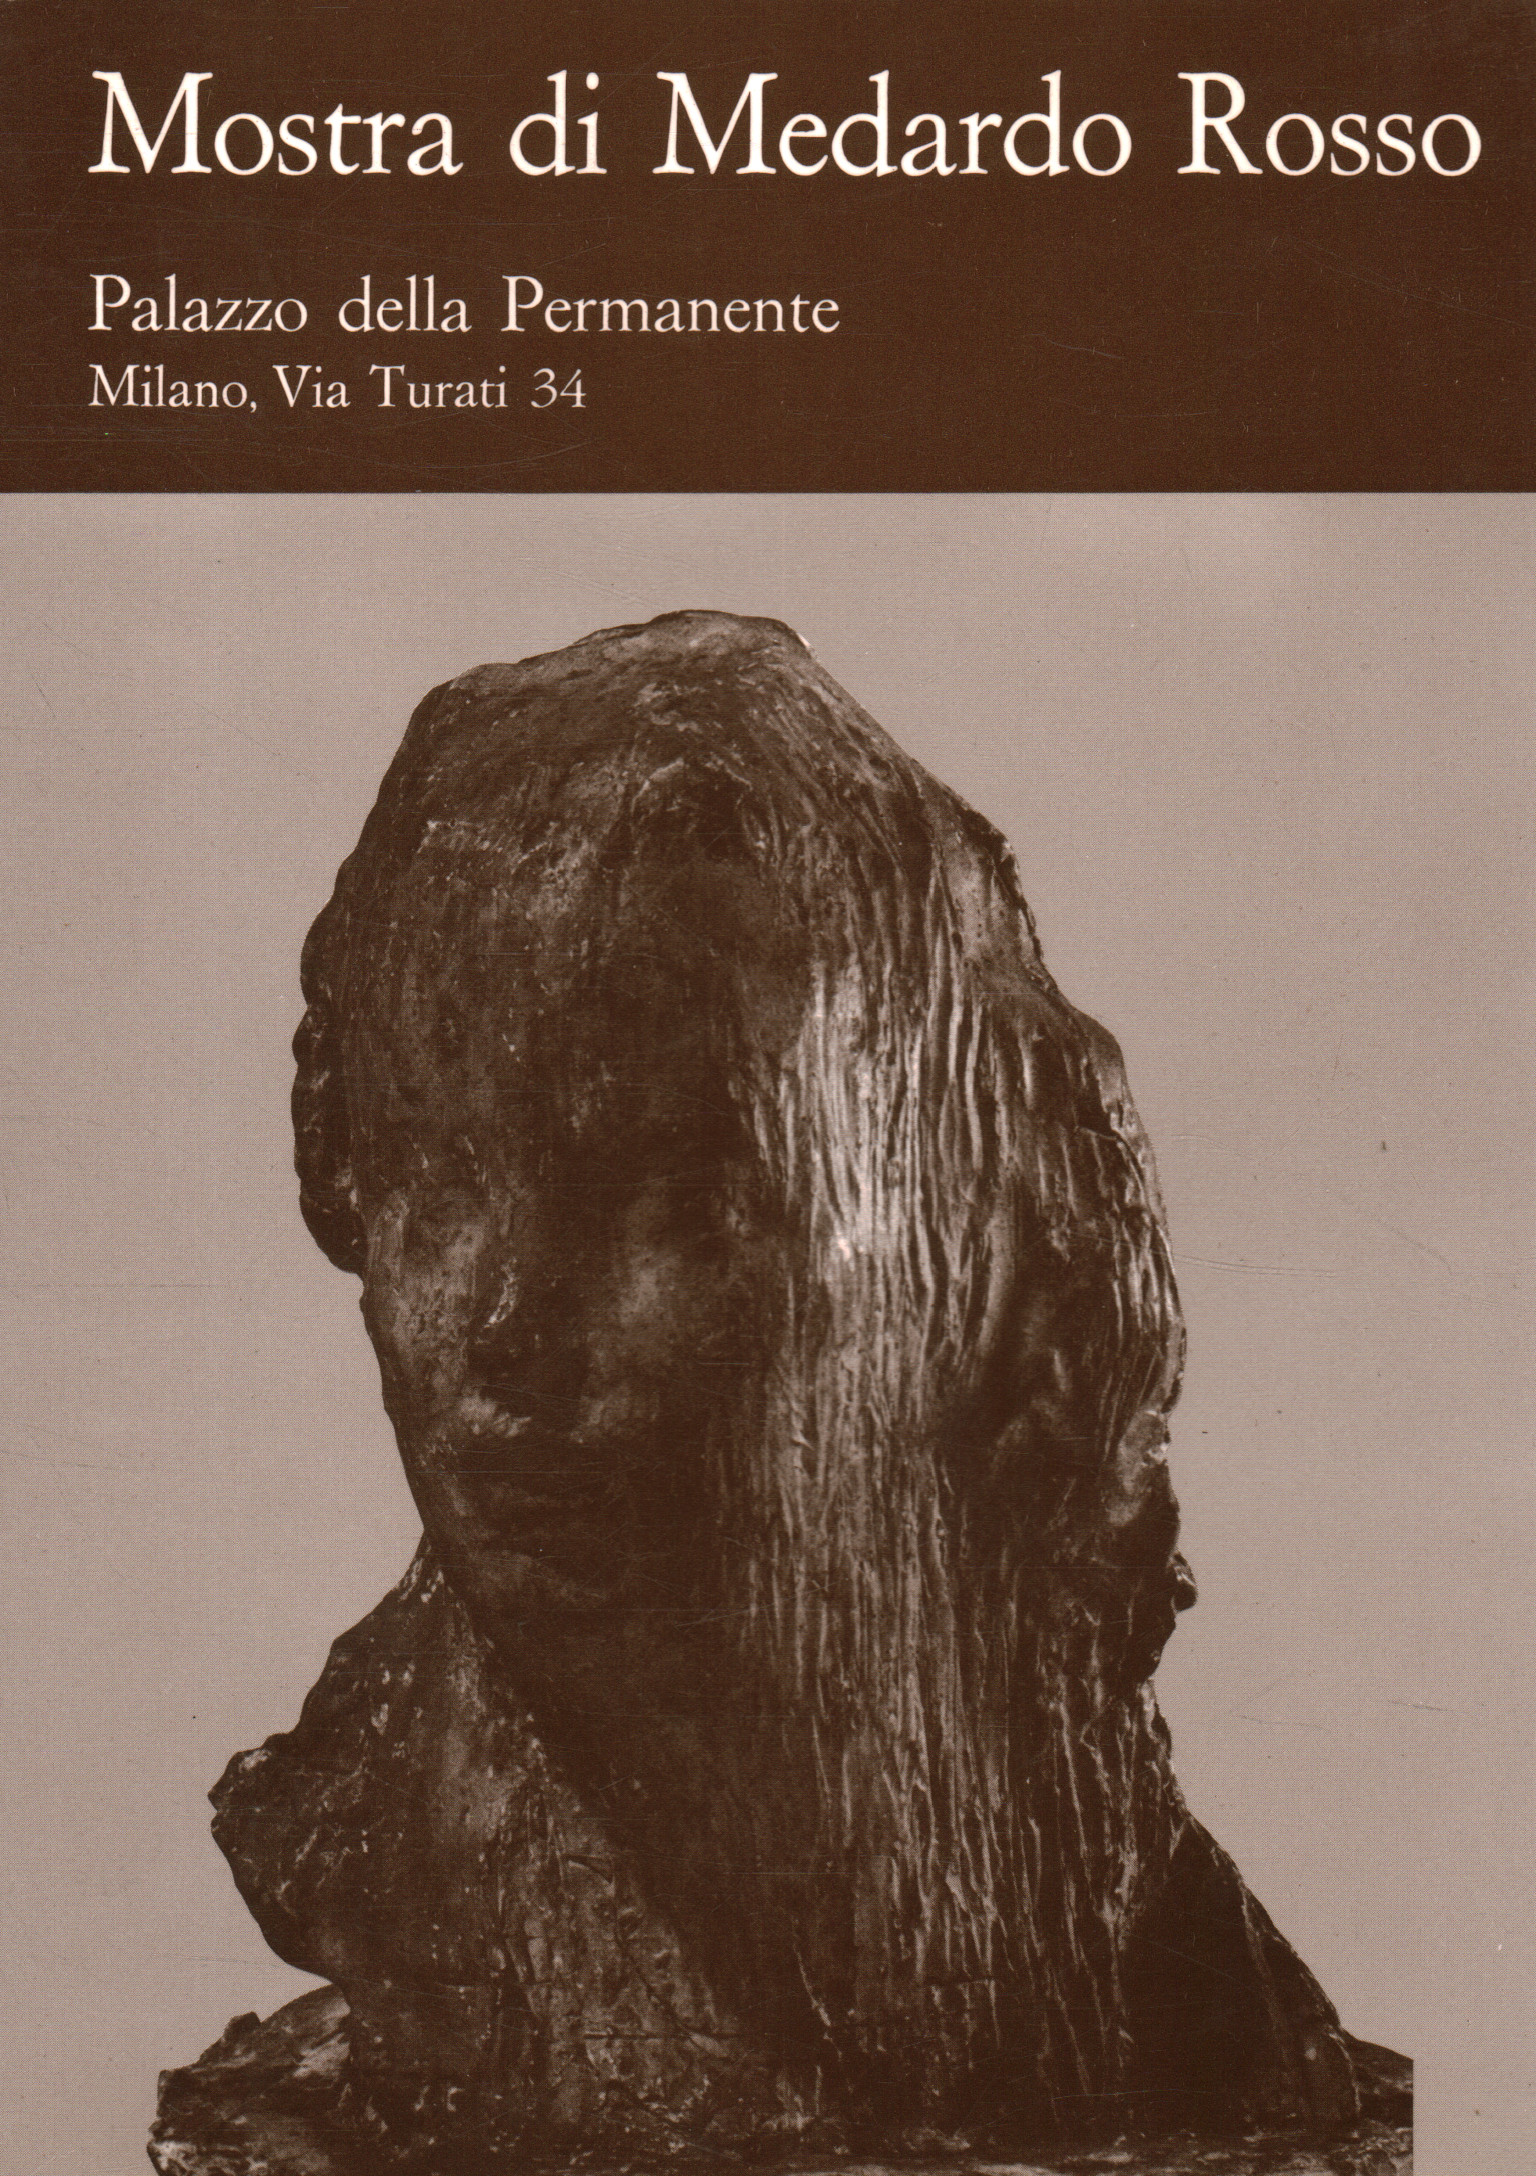 Exhibition of Medardo Rosso (1858-1928)